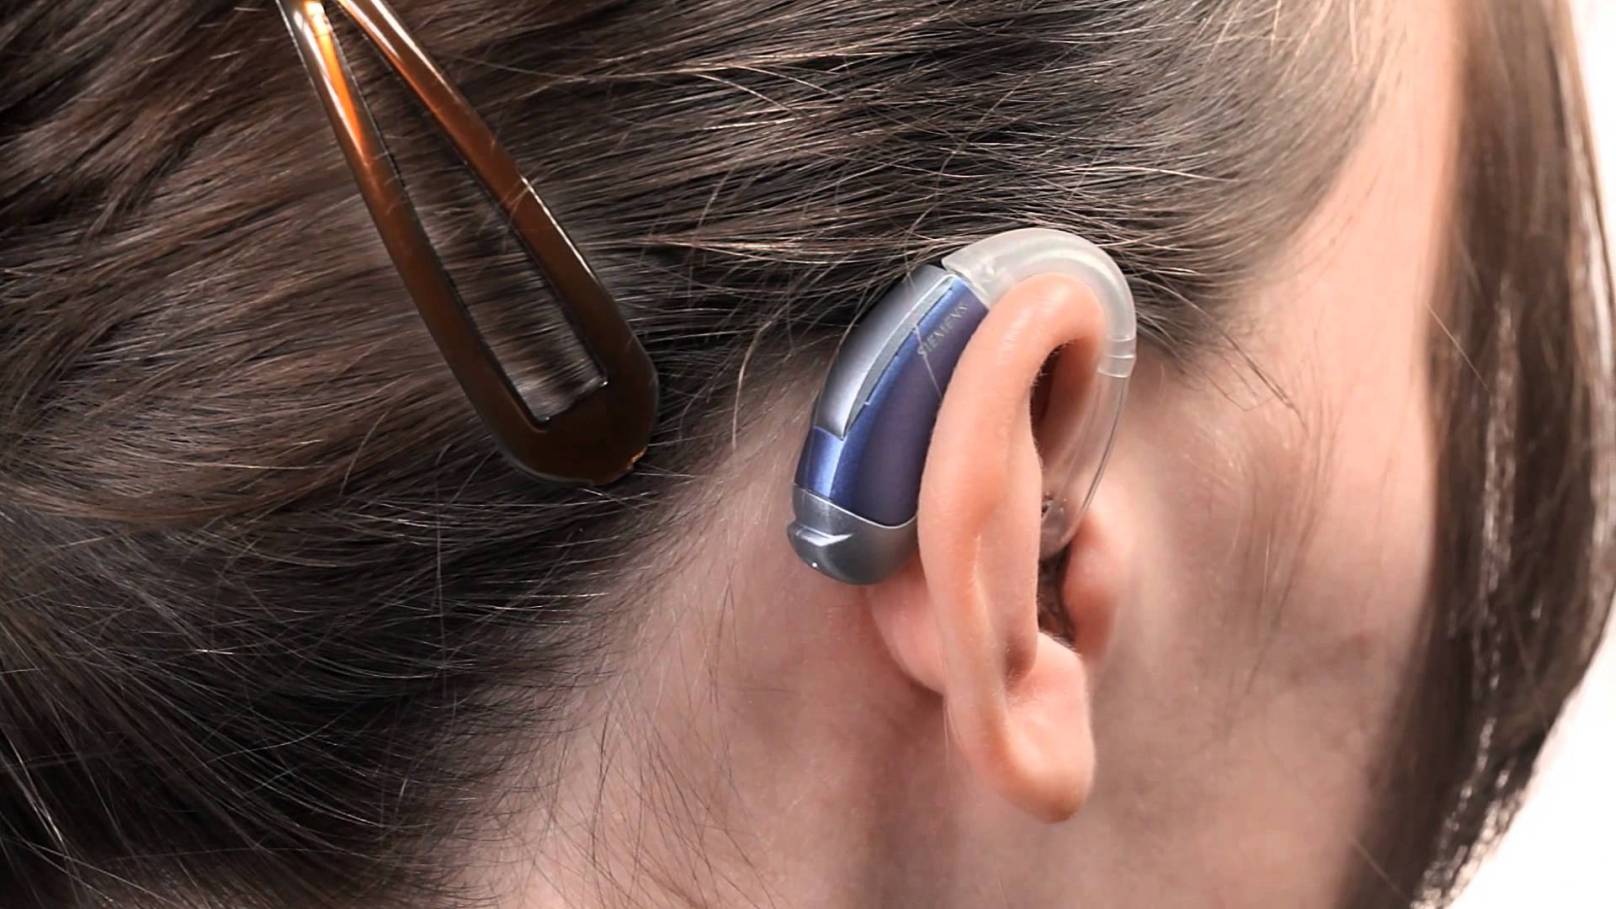 Ear hearing. Заушные слуховые аппараты (BTE). Слуховой аппарат Нео классика 675p. Слуховой аппарат цифровой заушный мощный. Audifon слуховые аппараты.